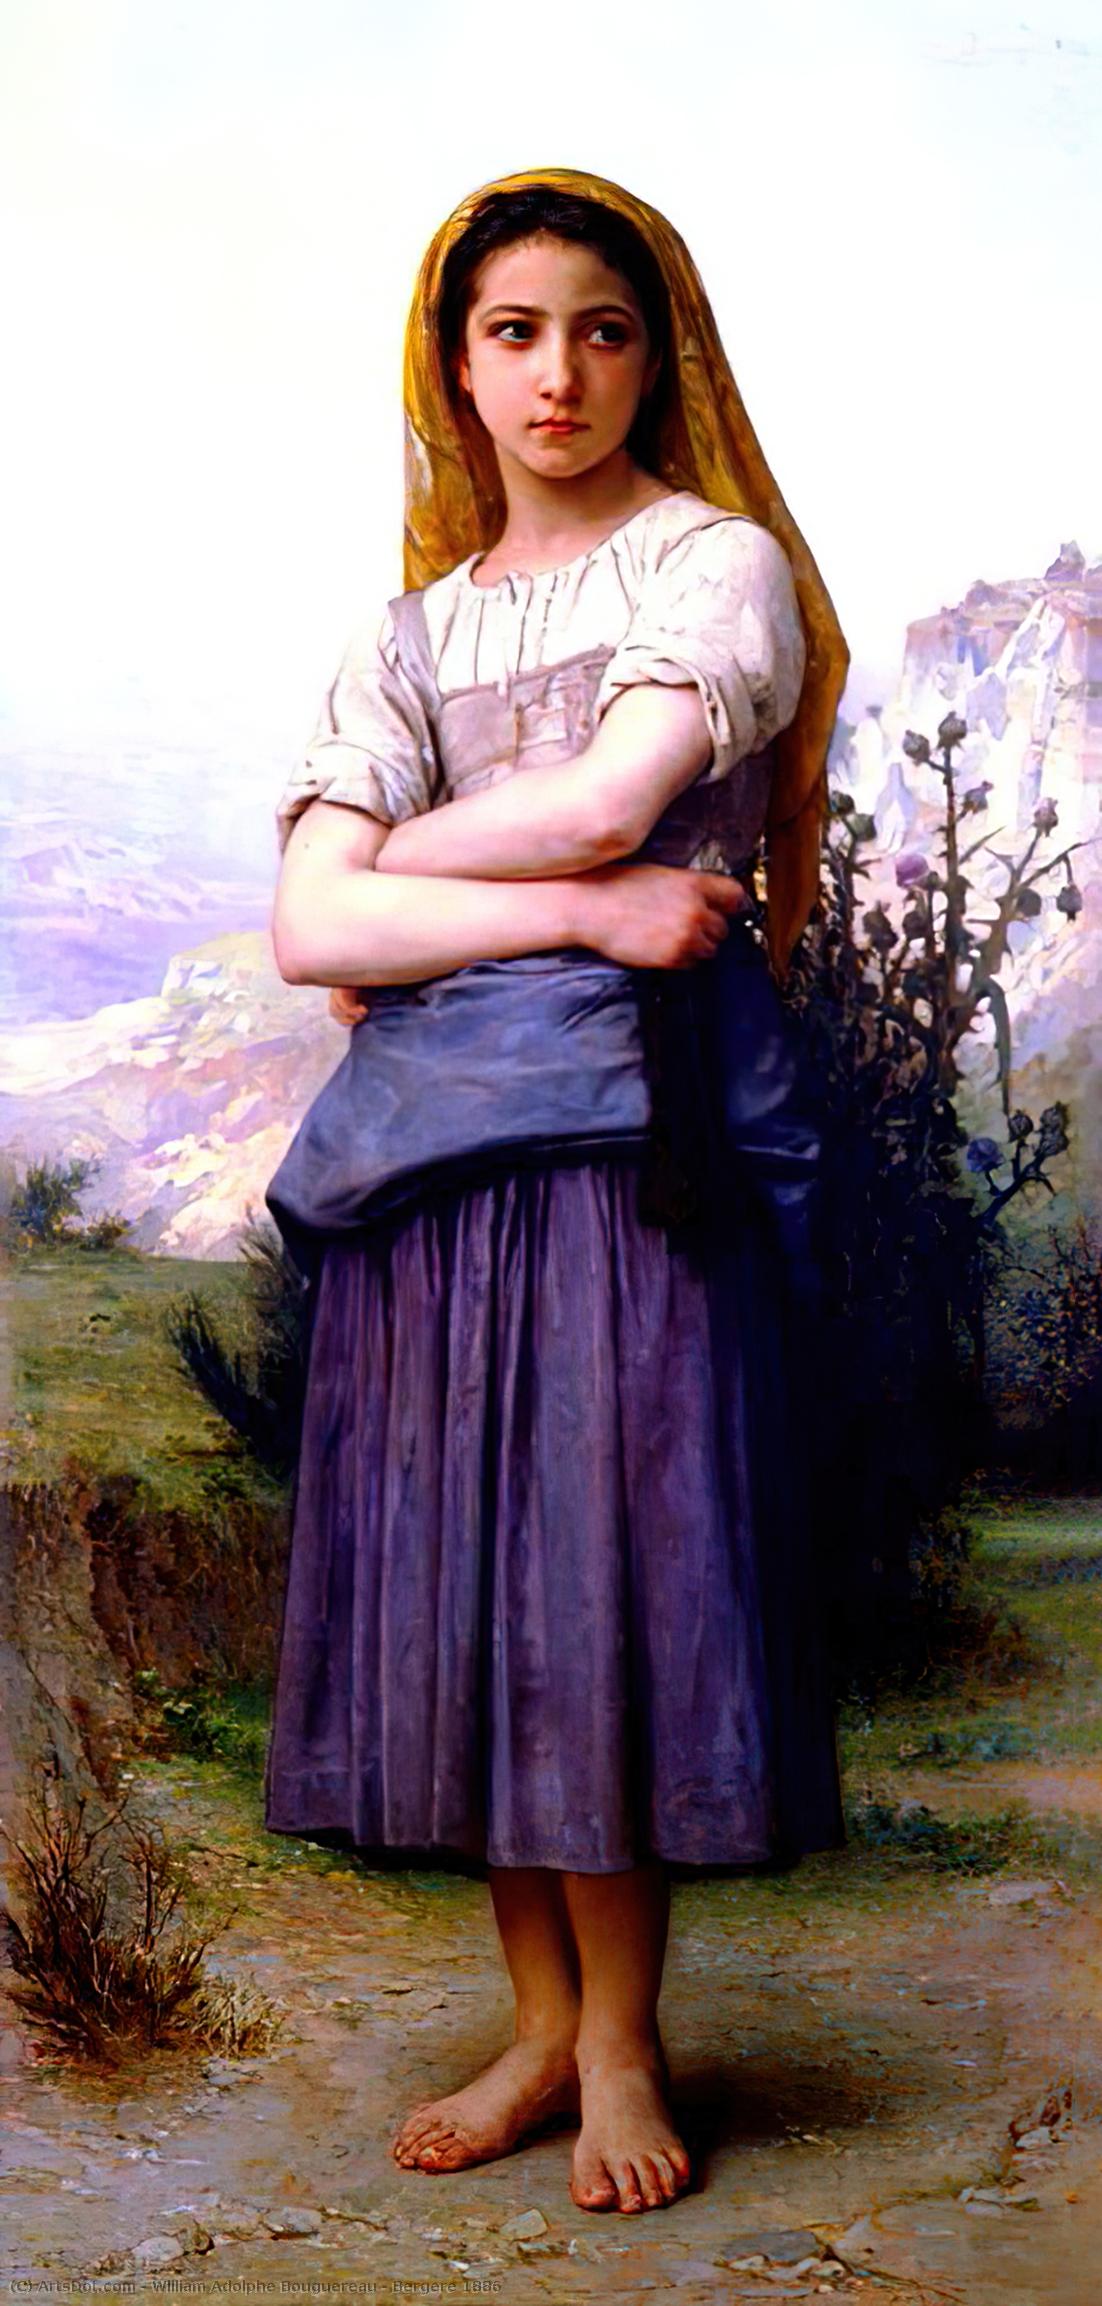 Wikoo.org - موسوعة الفنون الجميلة - اللوحة، العمل الفني William Adolphe Bouguereau - Bergere 1886